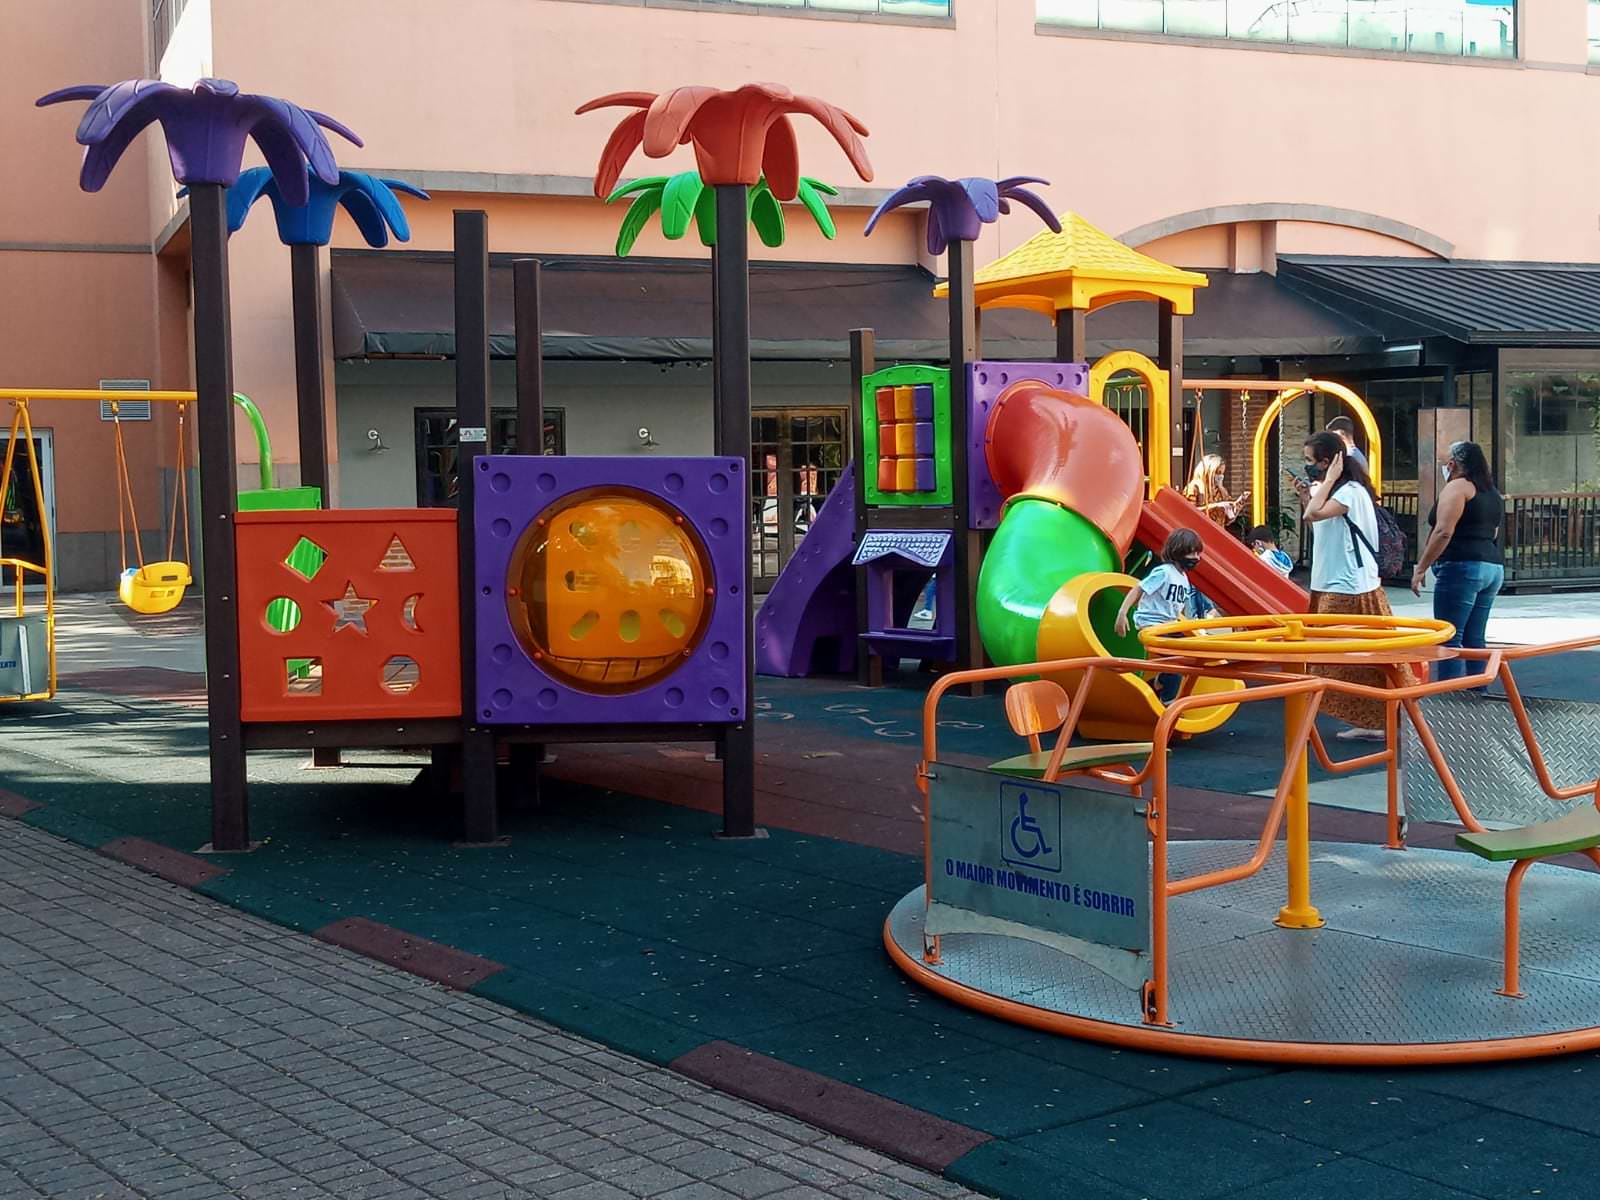 Lo spazio polivalente a Barra ha giocattoli inclusi per i bambini con sedia a rotelle. Foto: Rivelazione.